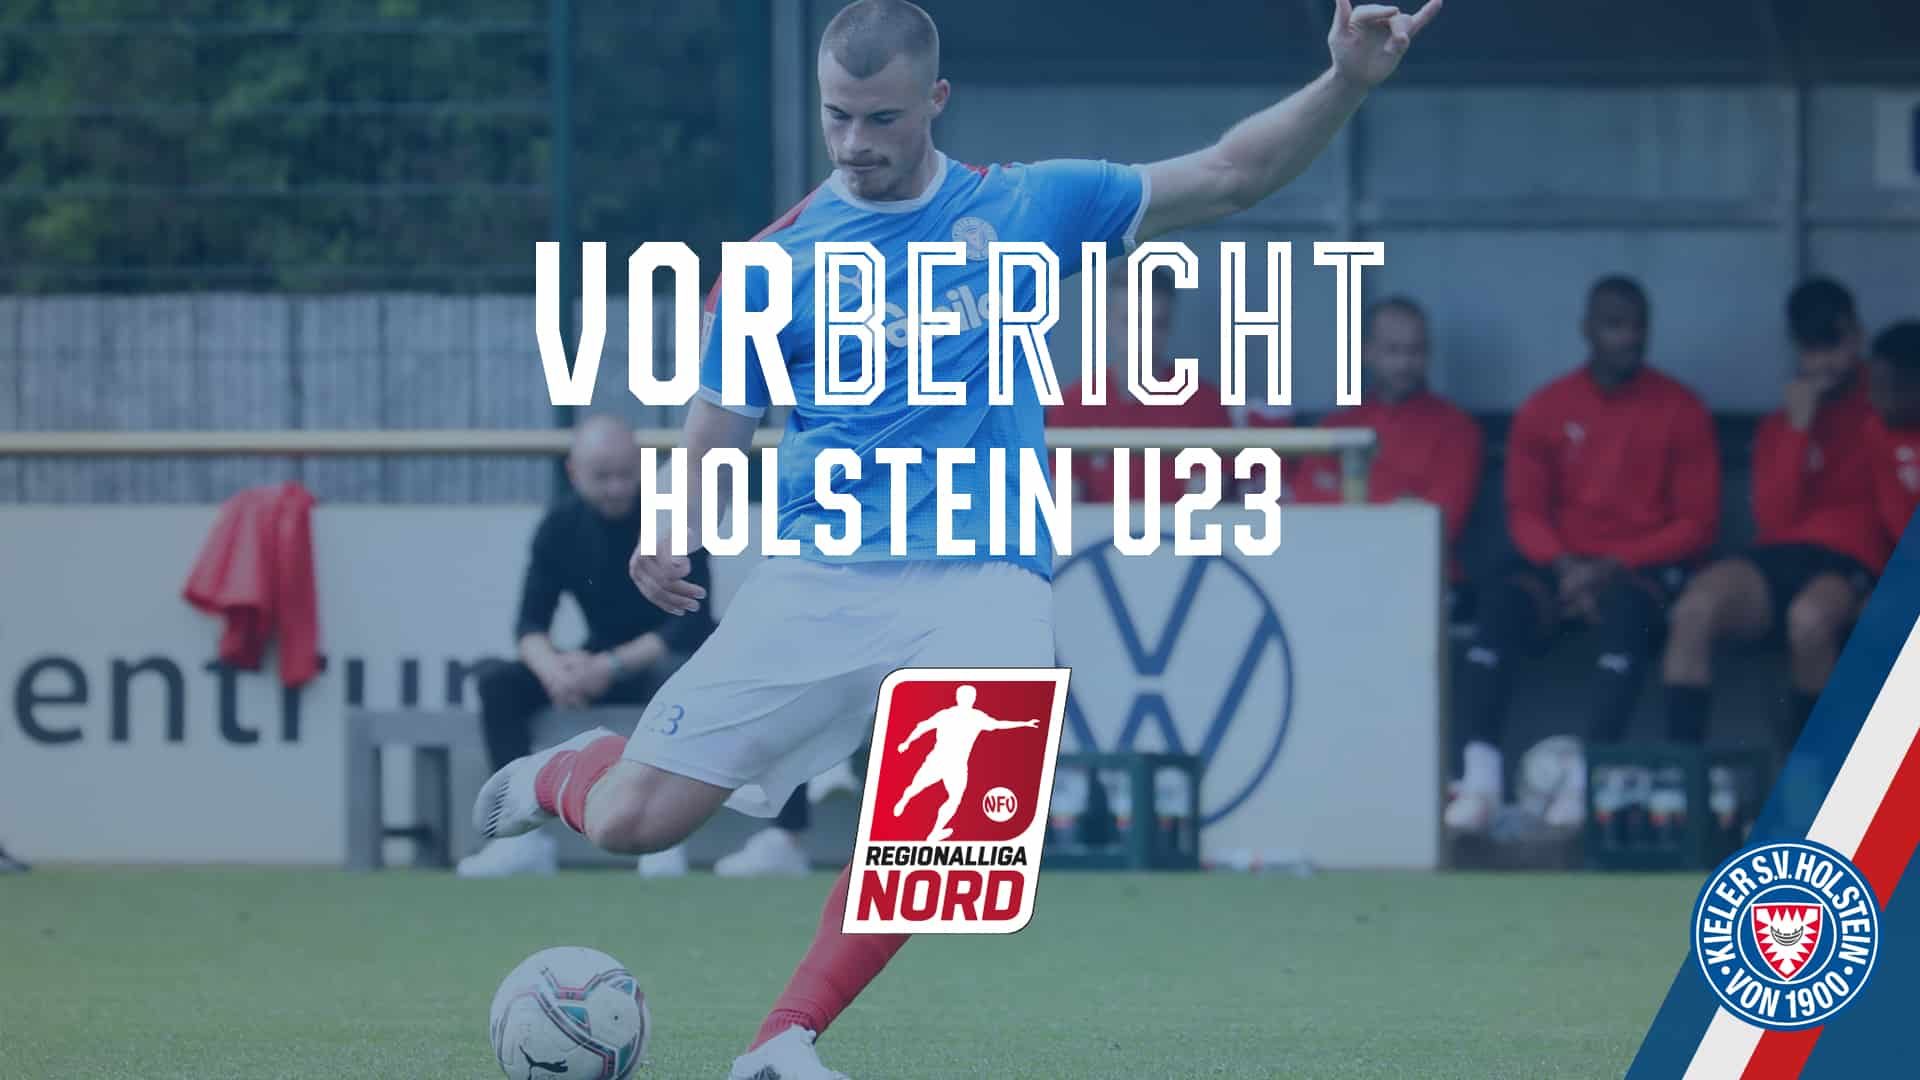 20210818 Vorbericht_U23 Heide Koulis